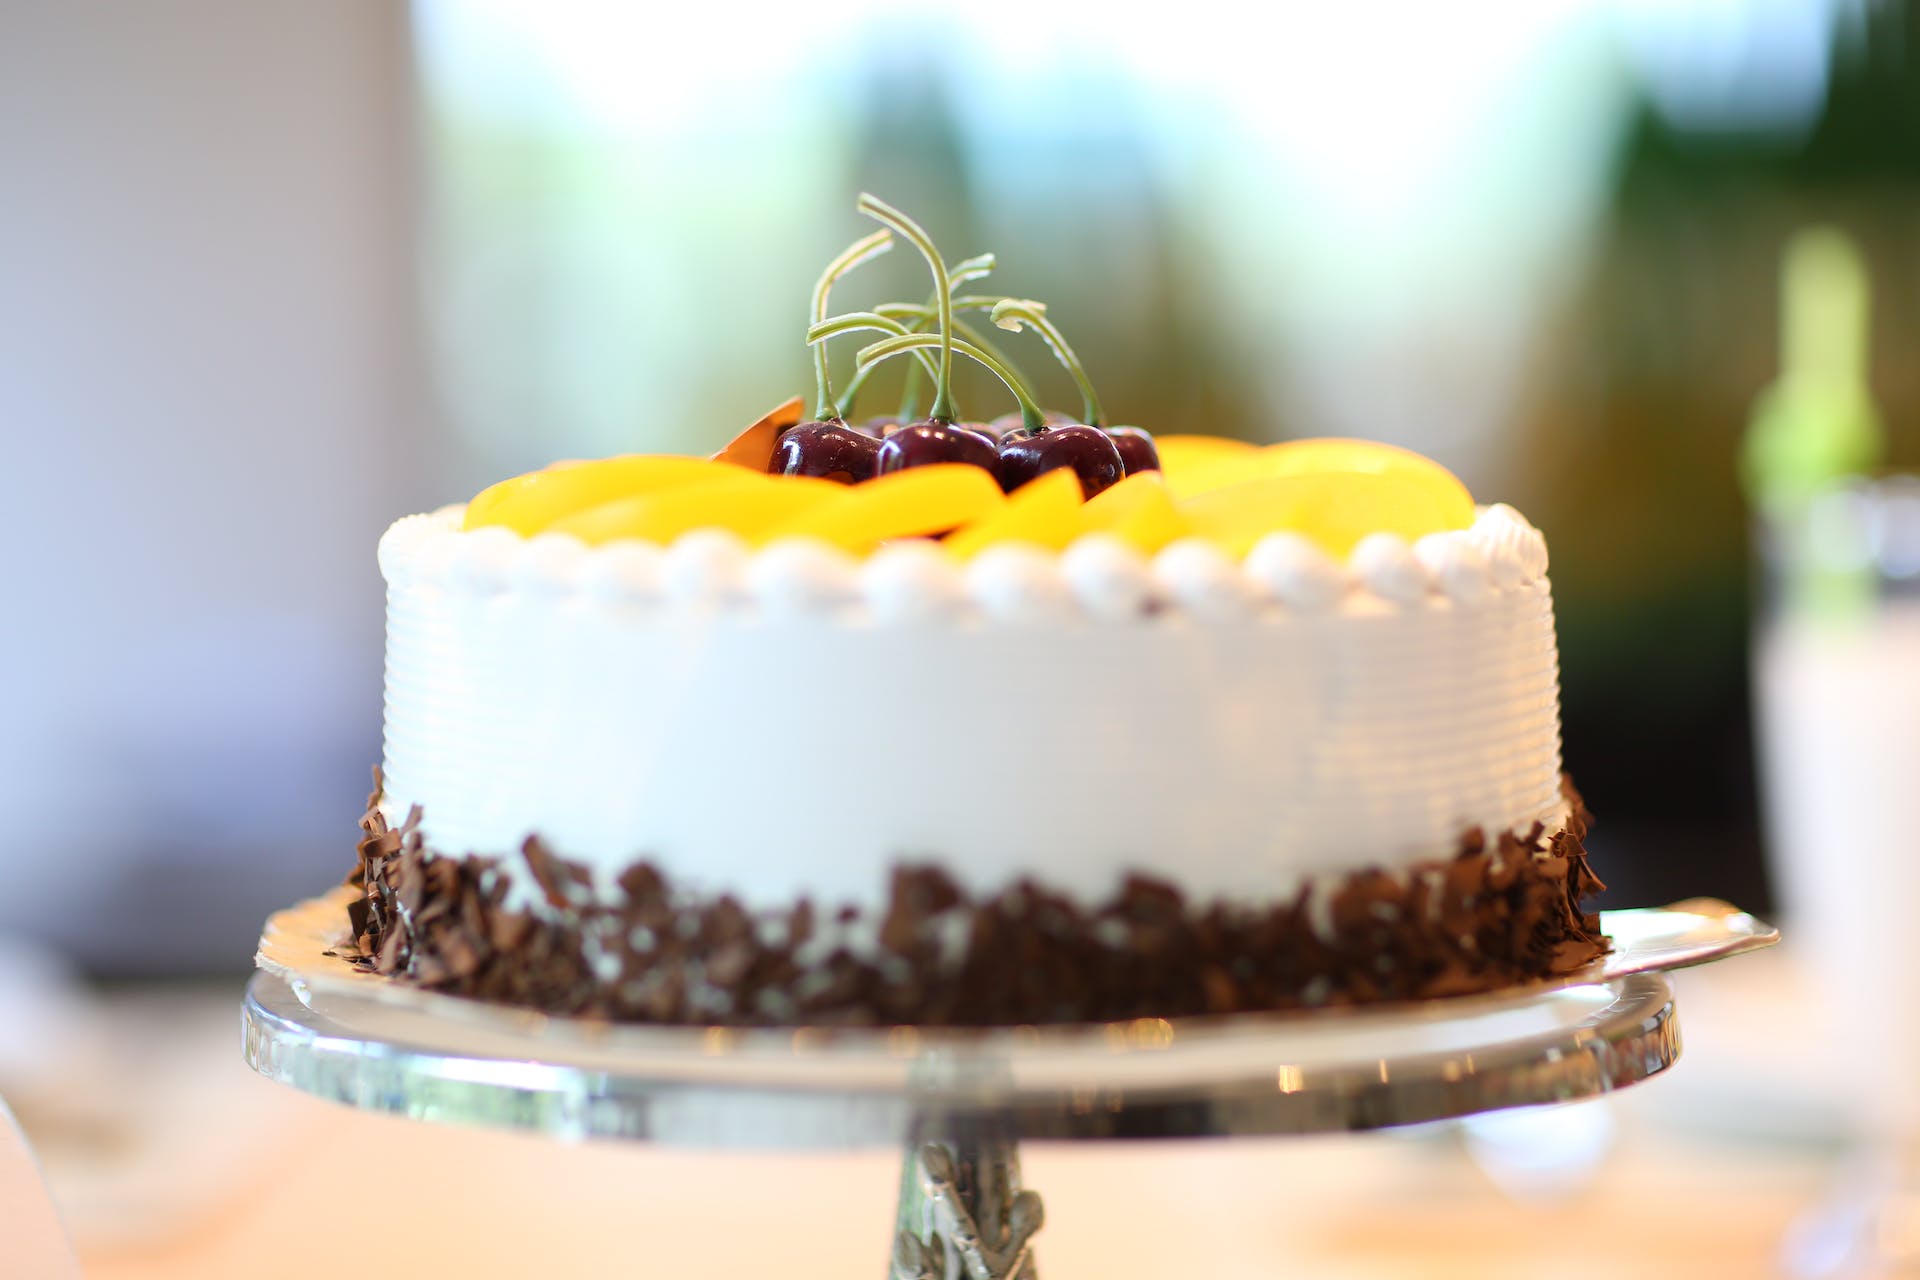 Ein mit Früchten belegter Kuchen | Quelle: Pexels